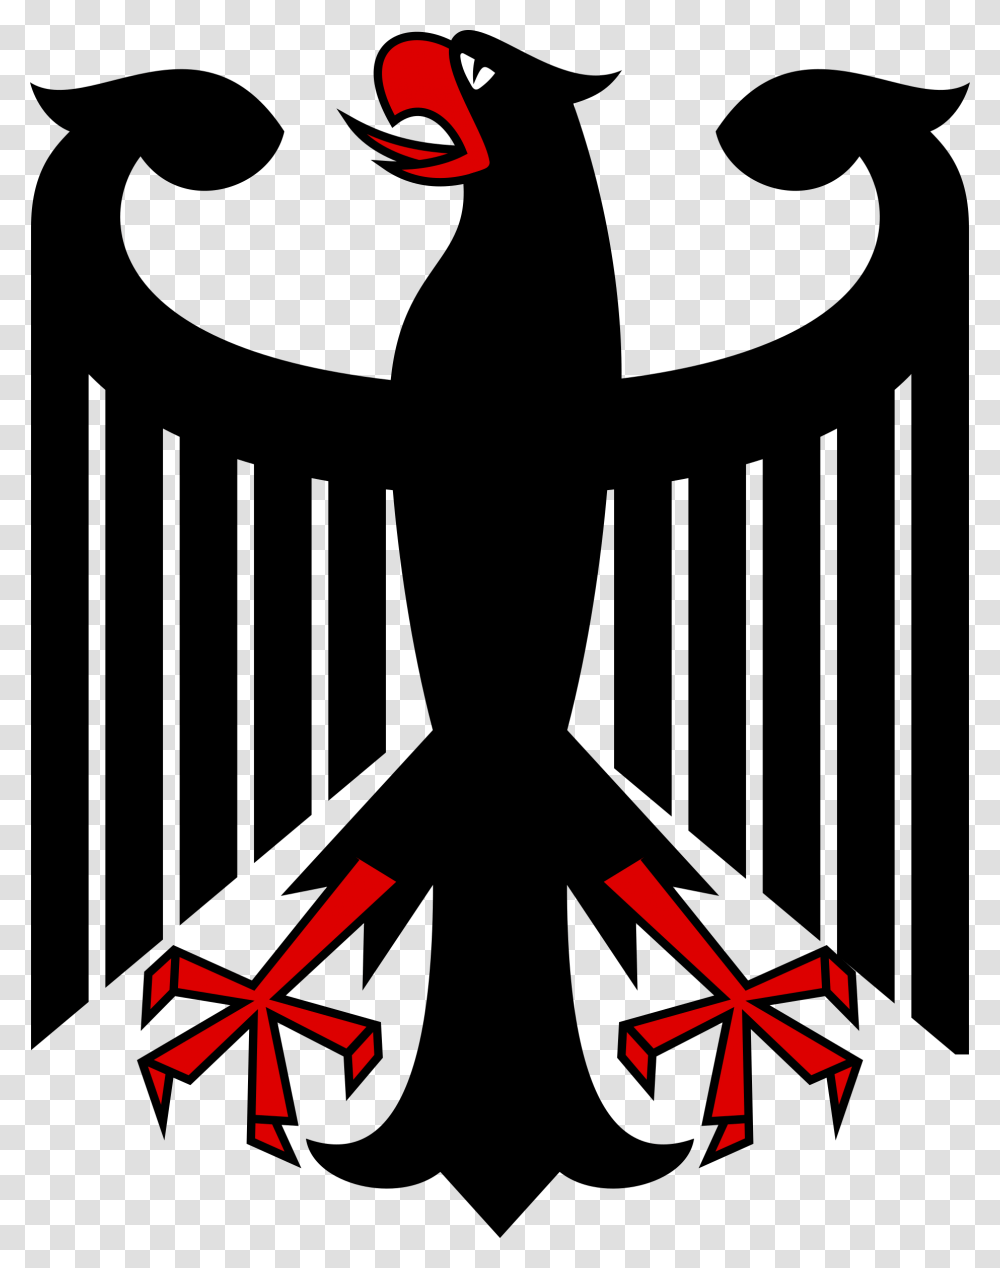 Black Eagle Clipart Stylised, Star Symbol Transparent Png